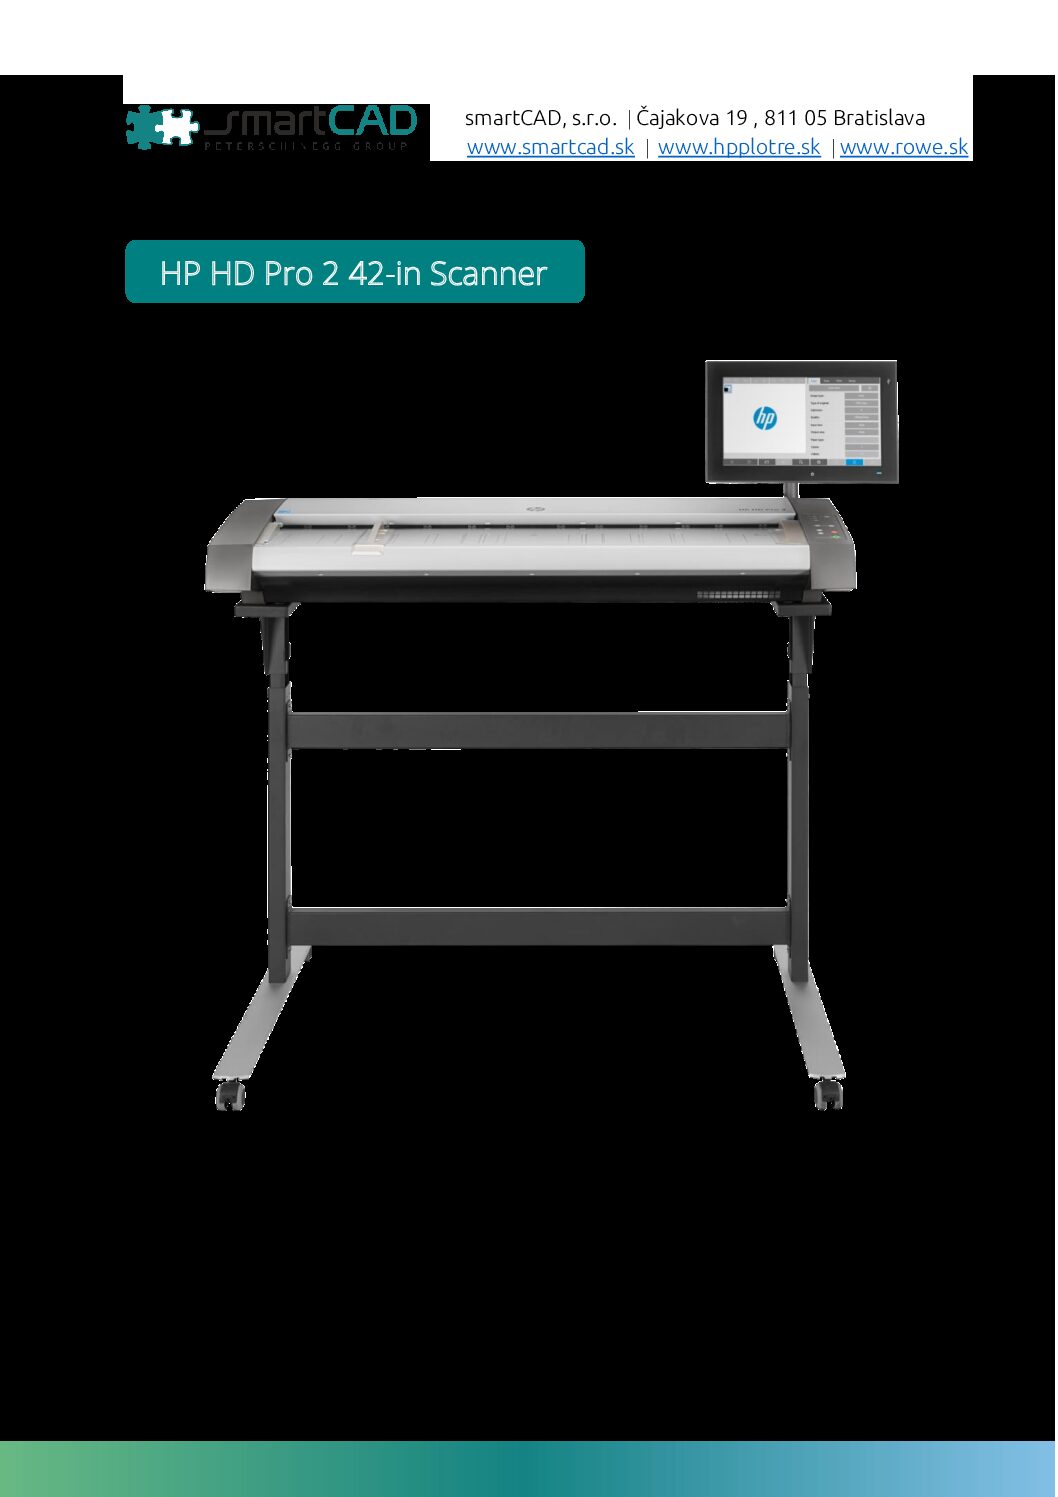 HP HD Pro 2 42-in scanner